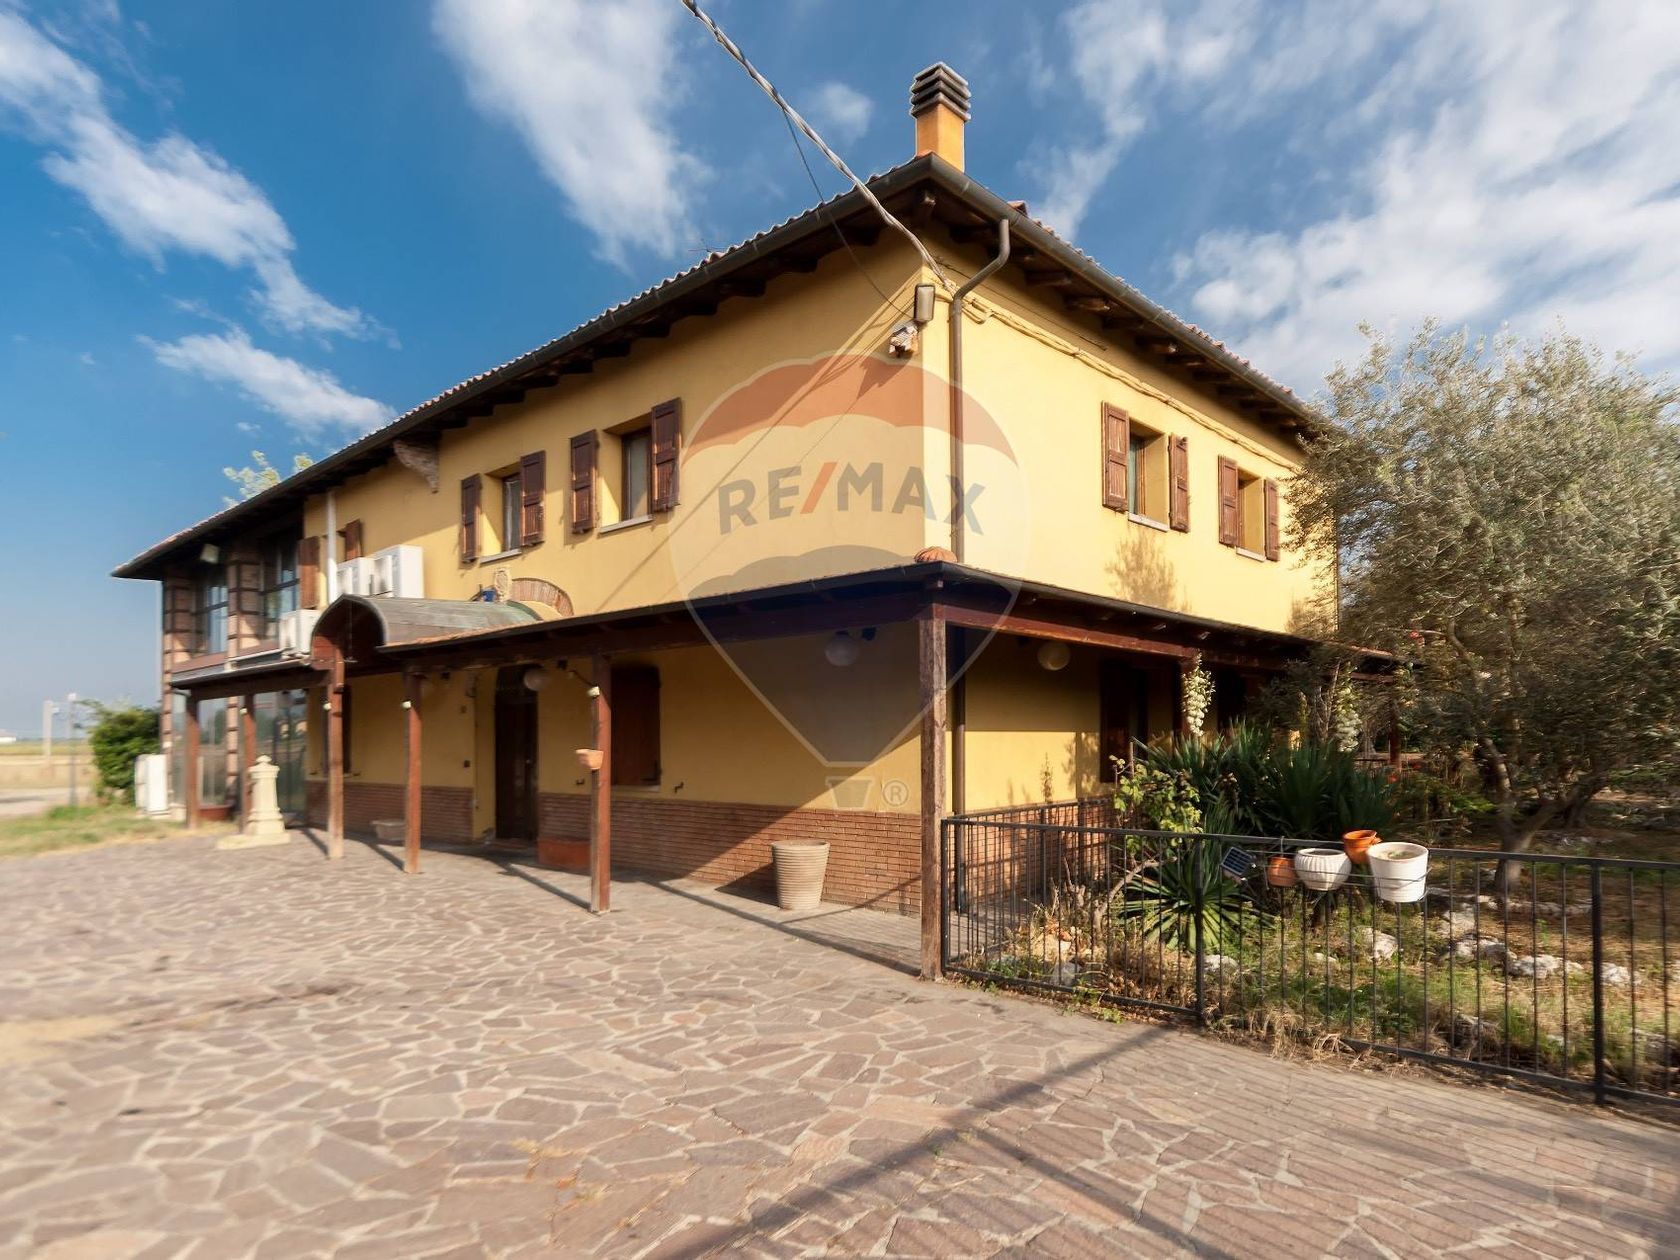 For sale real estate transaction in quiet zone Anzola dell´Emilia Emilia-Romagna